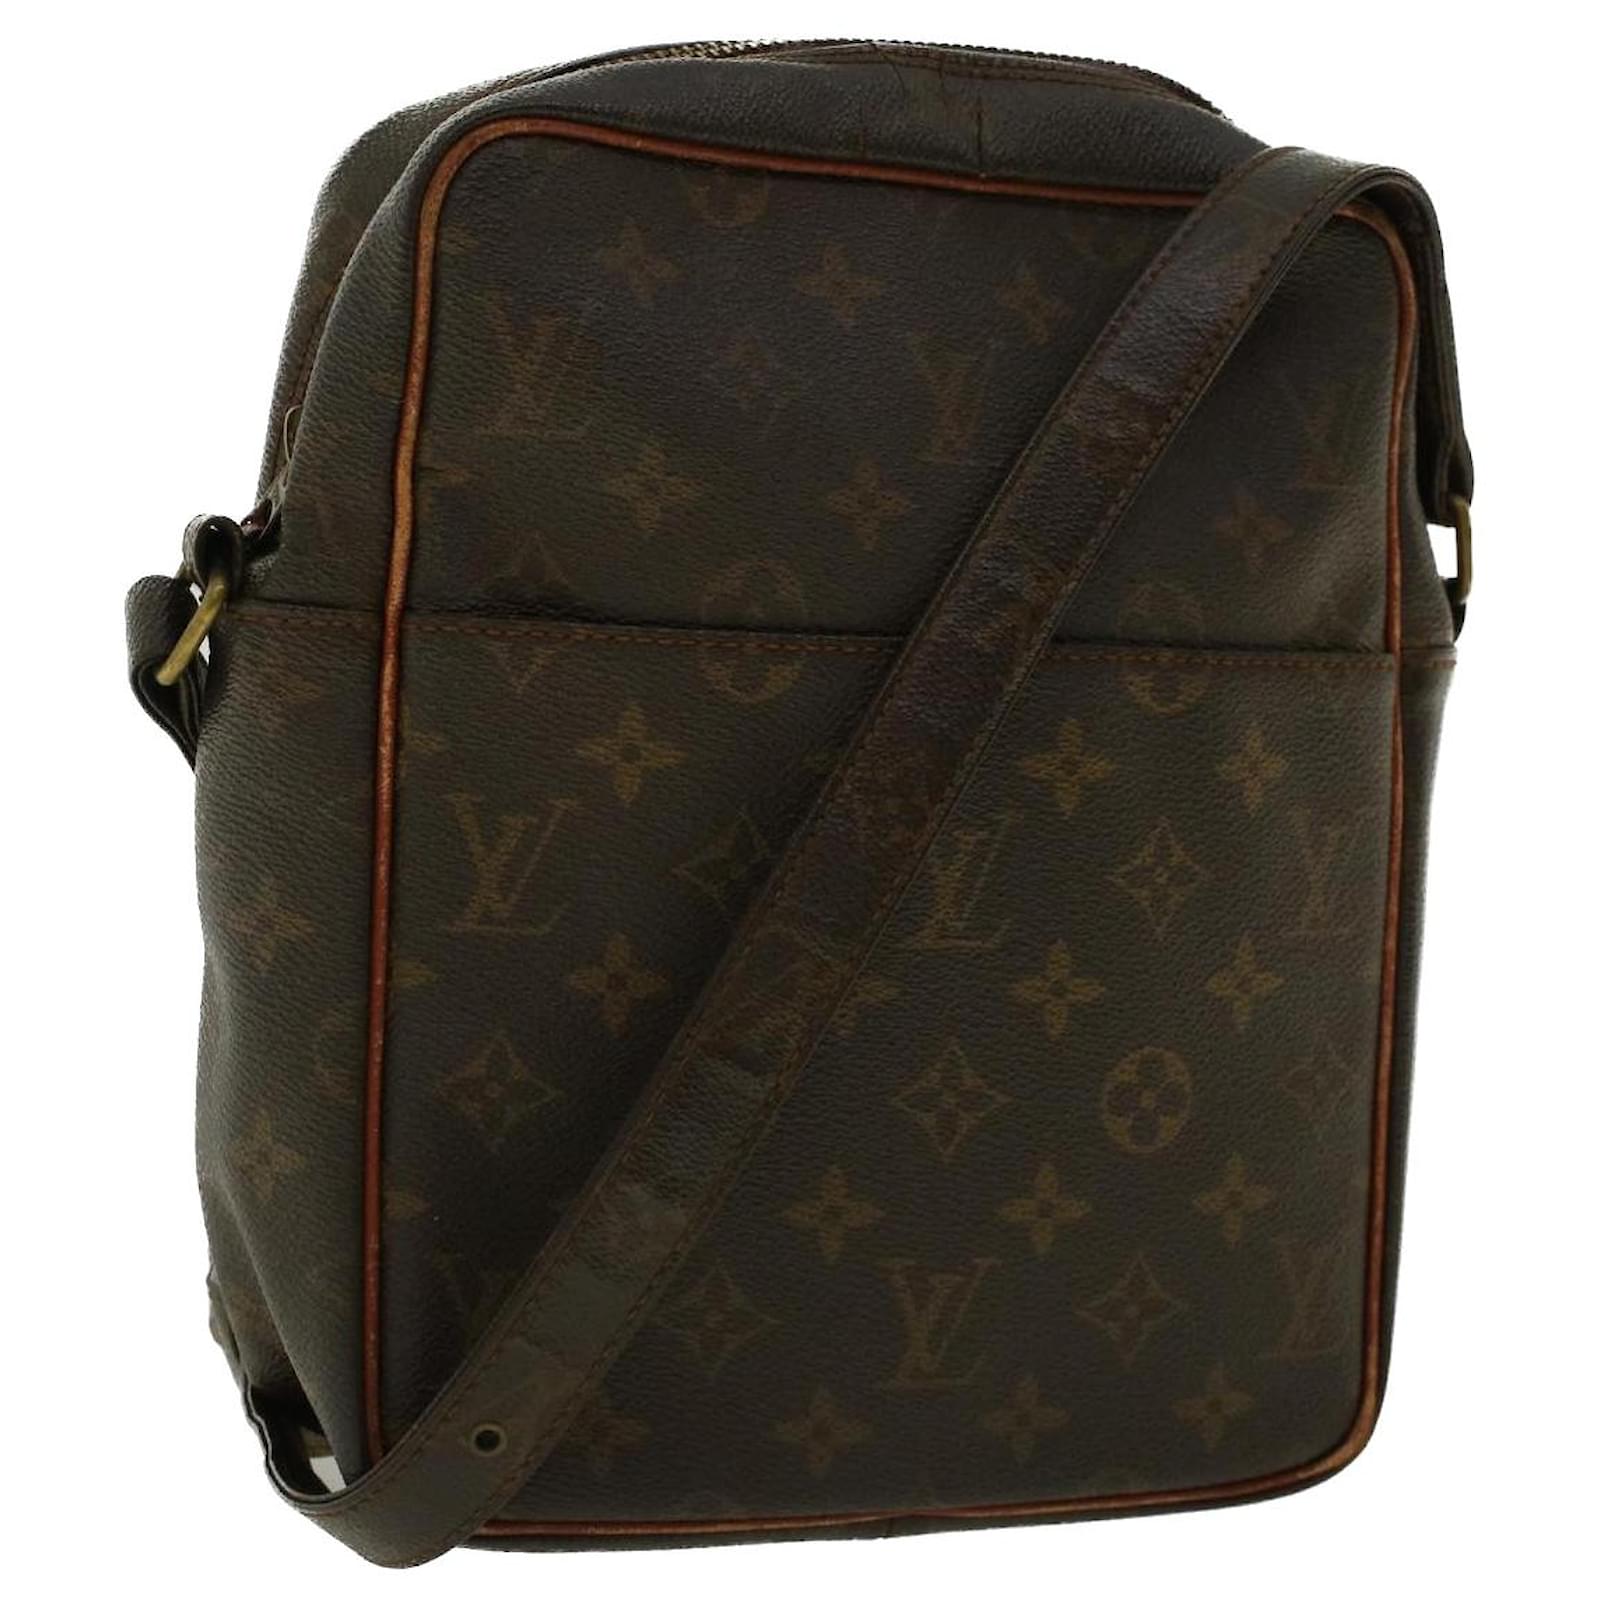 Louis Vuitton Marceau Handbag Monogram Canvas with Leather